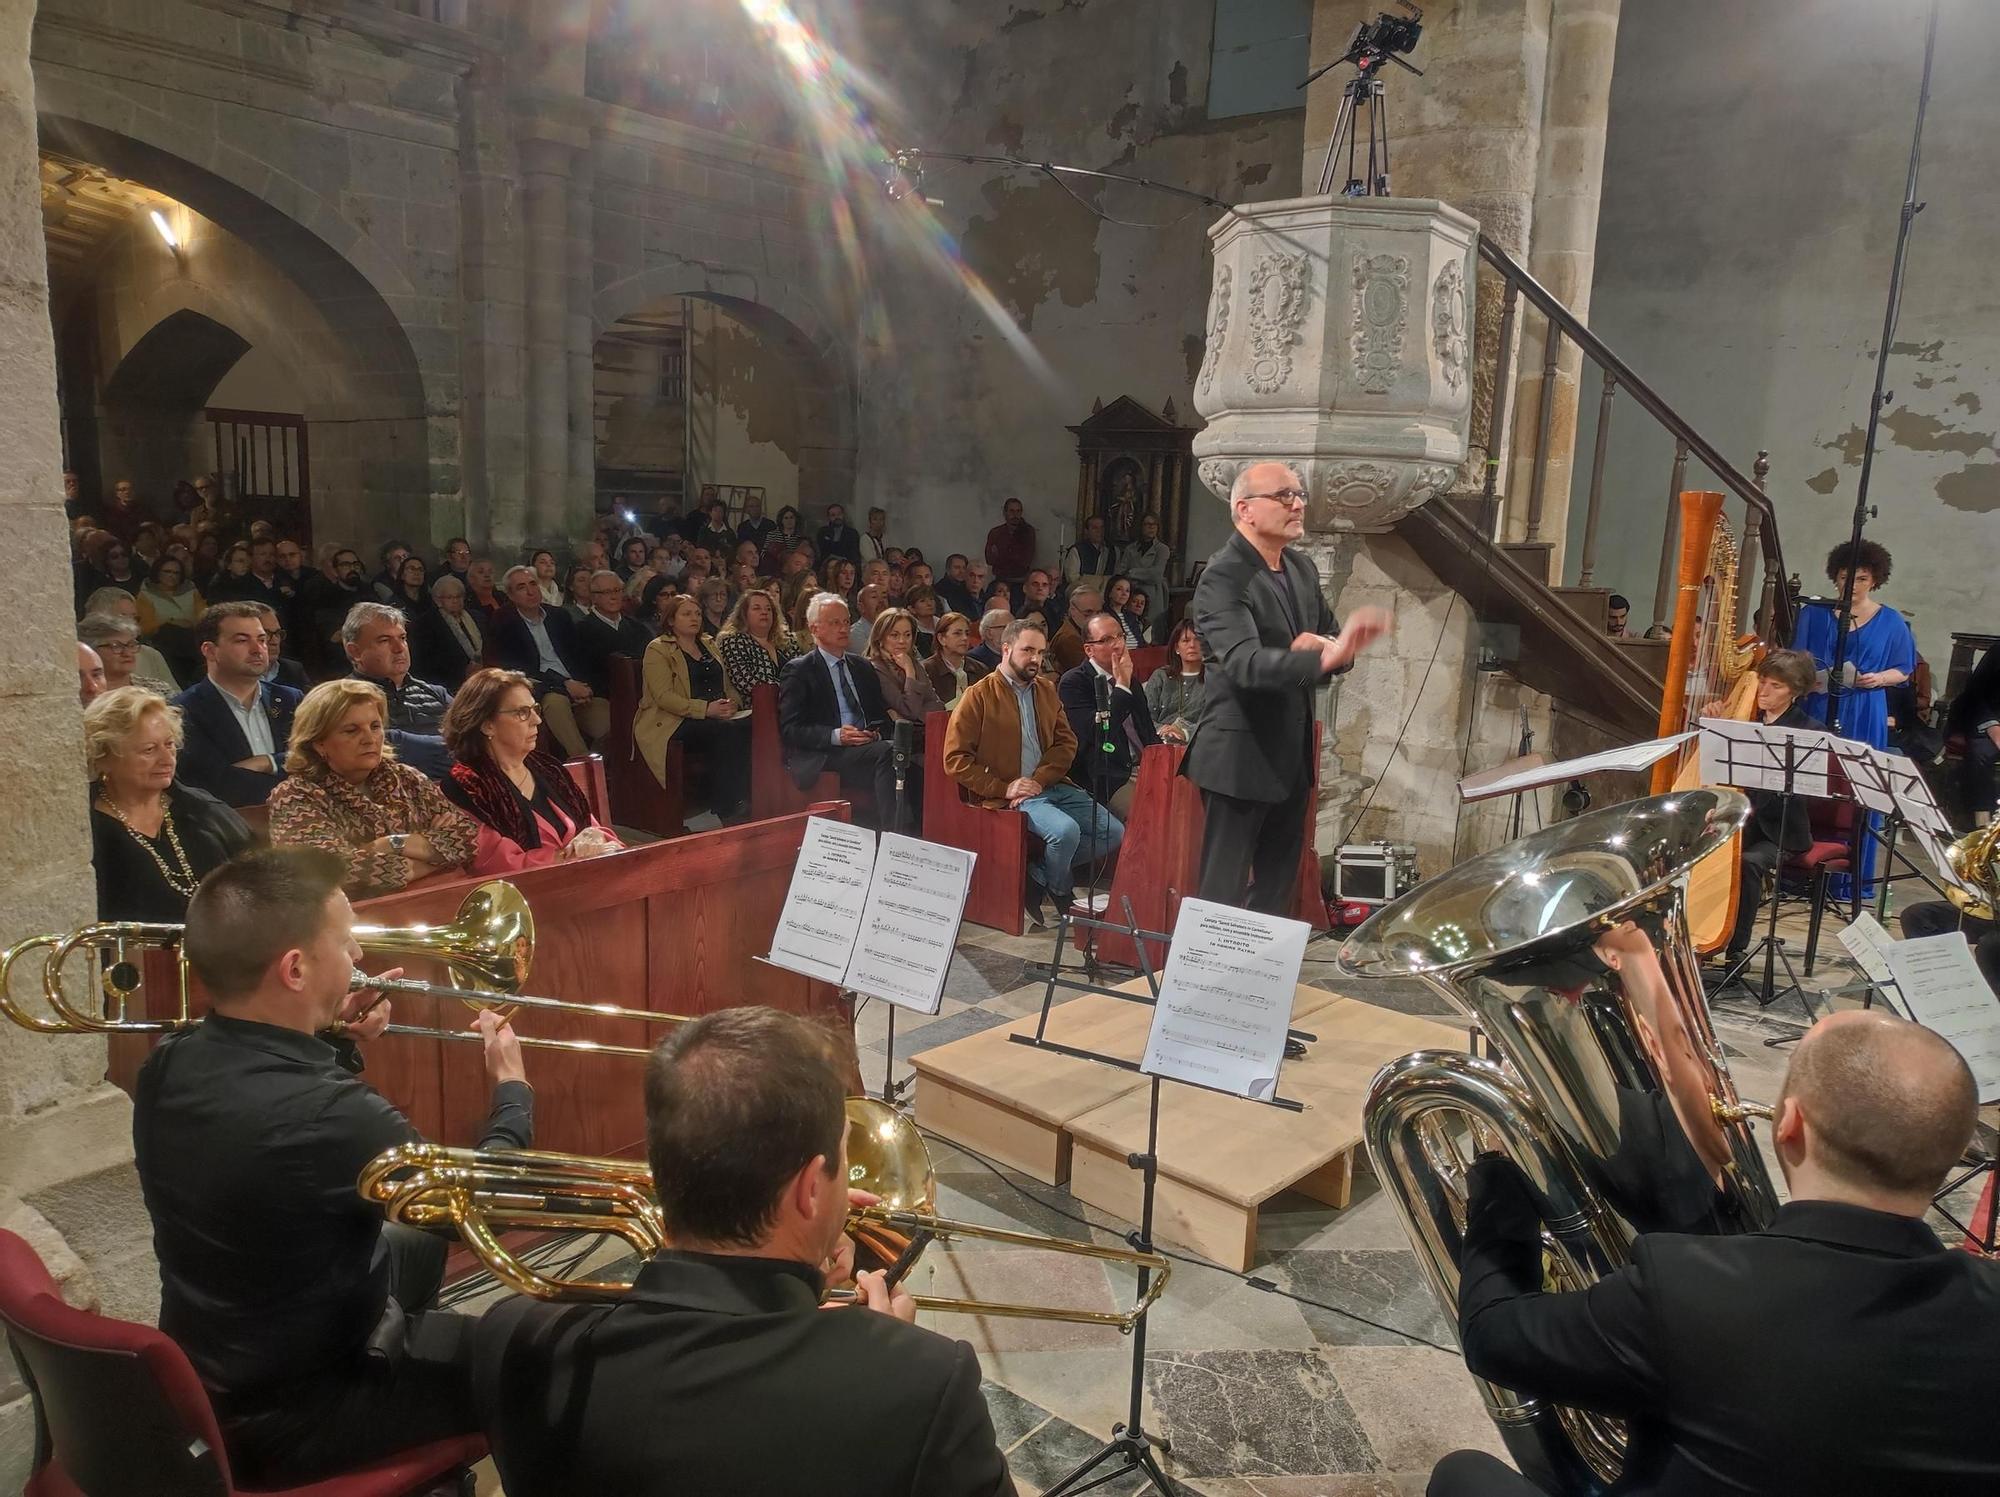 En imágenes: Así fue el espectacular estreno de la cantata del monasterio de Cornellana